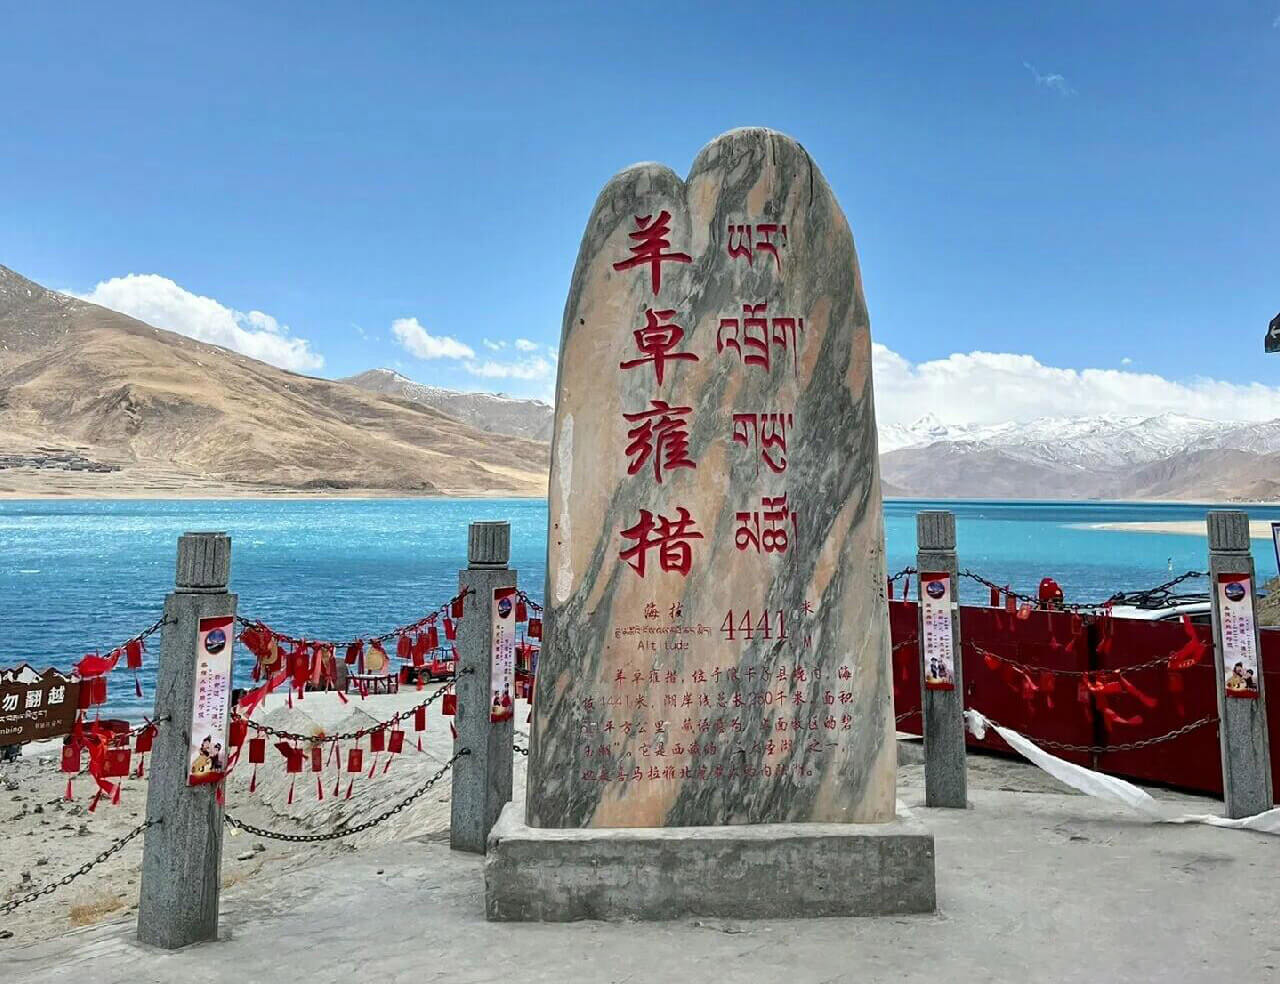 Tibet Yamdrok Lake